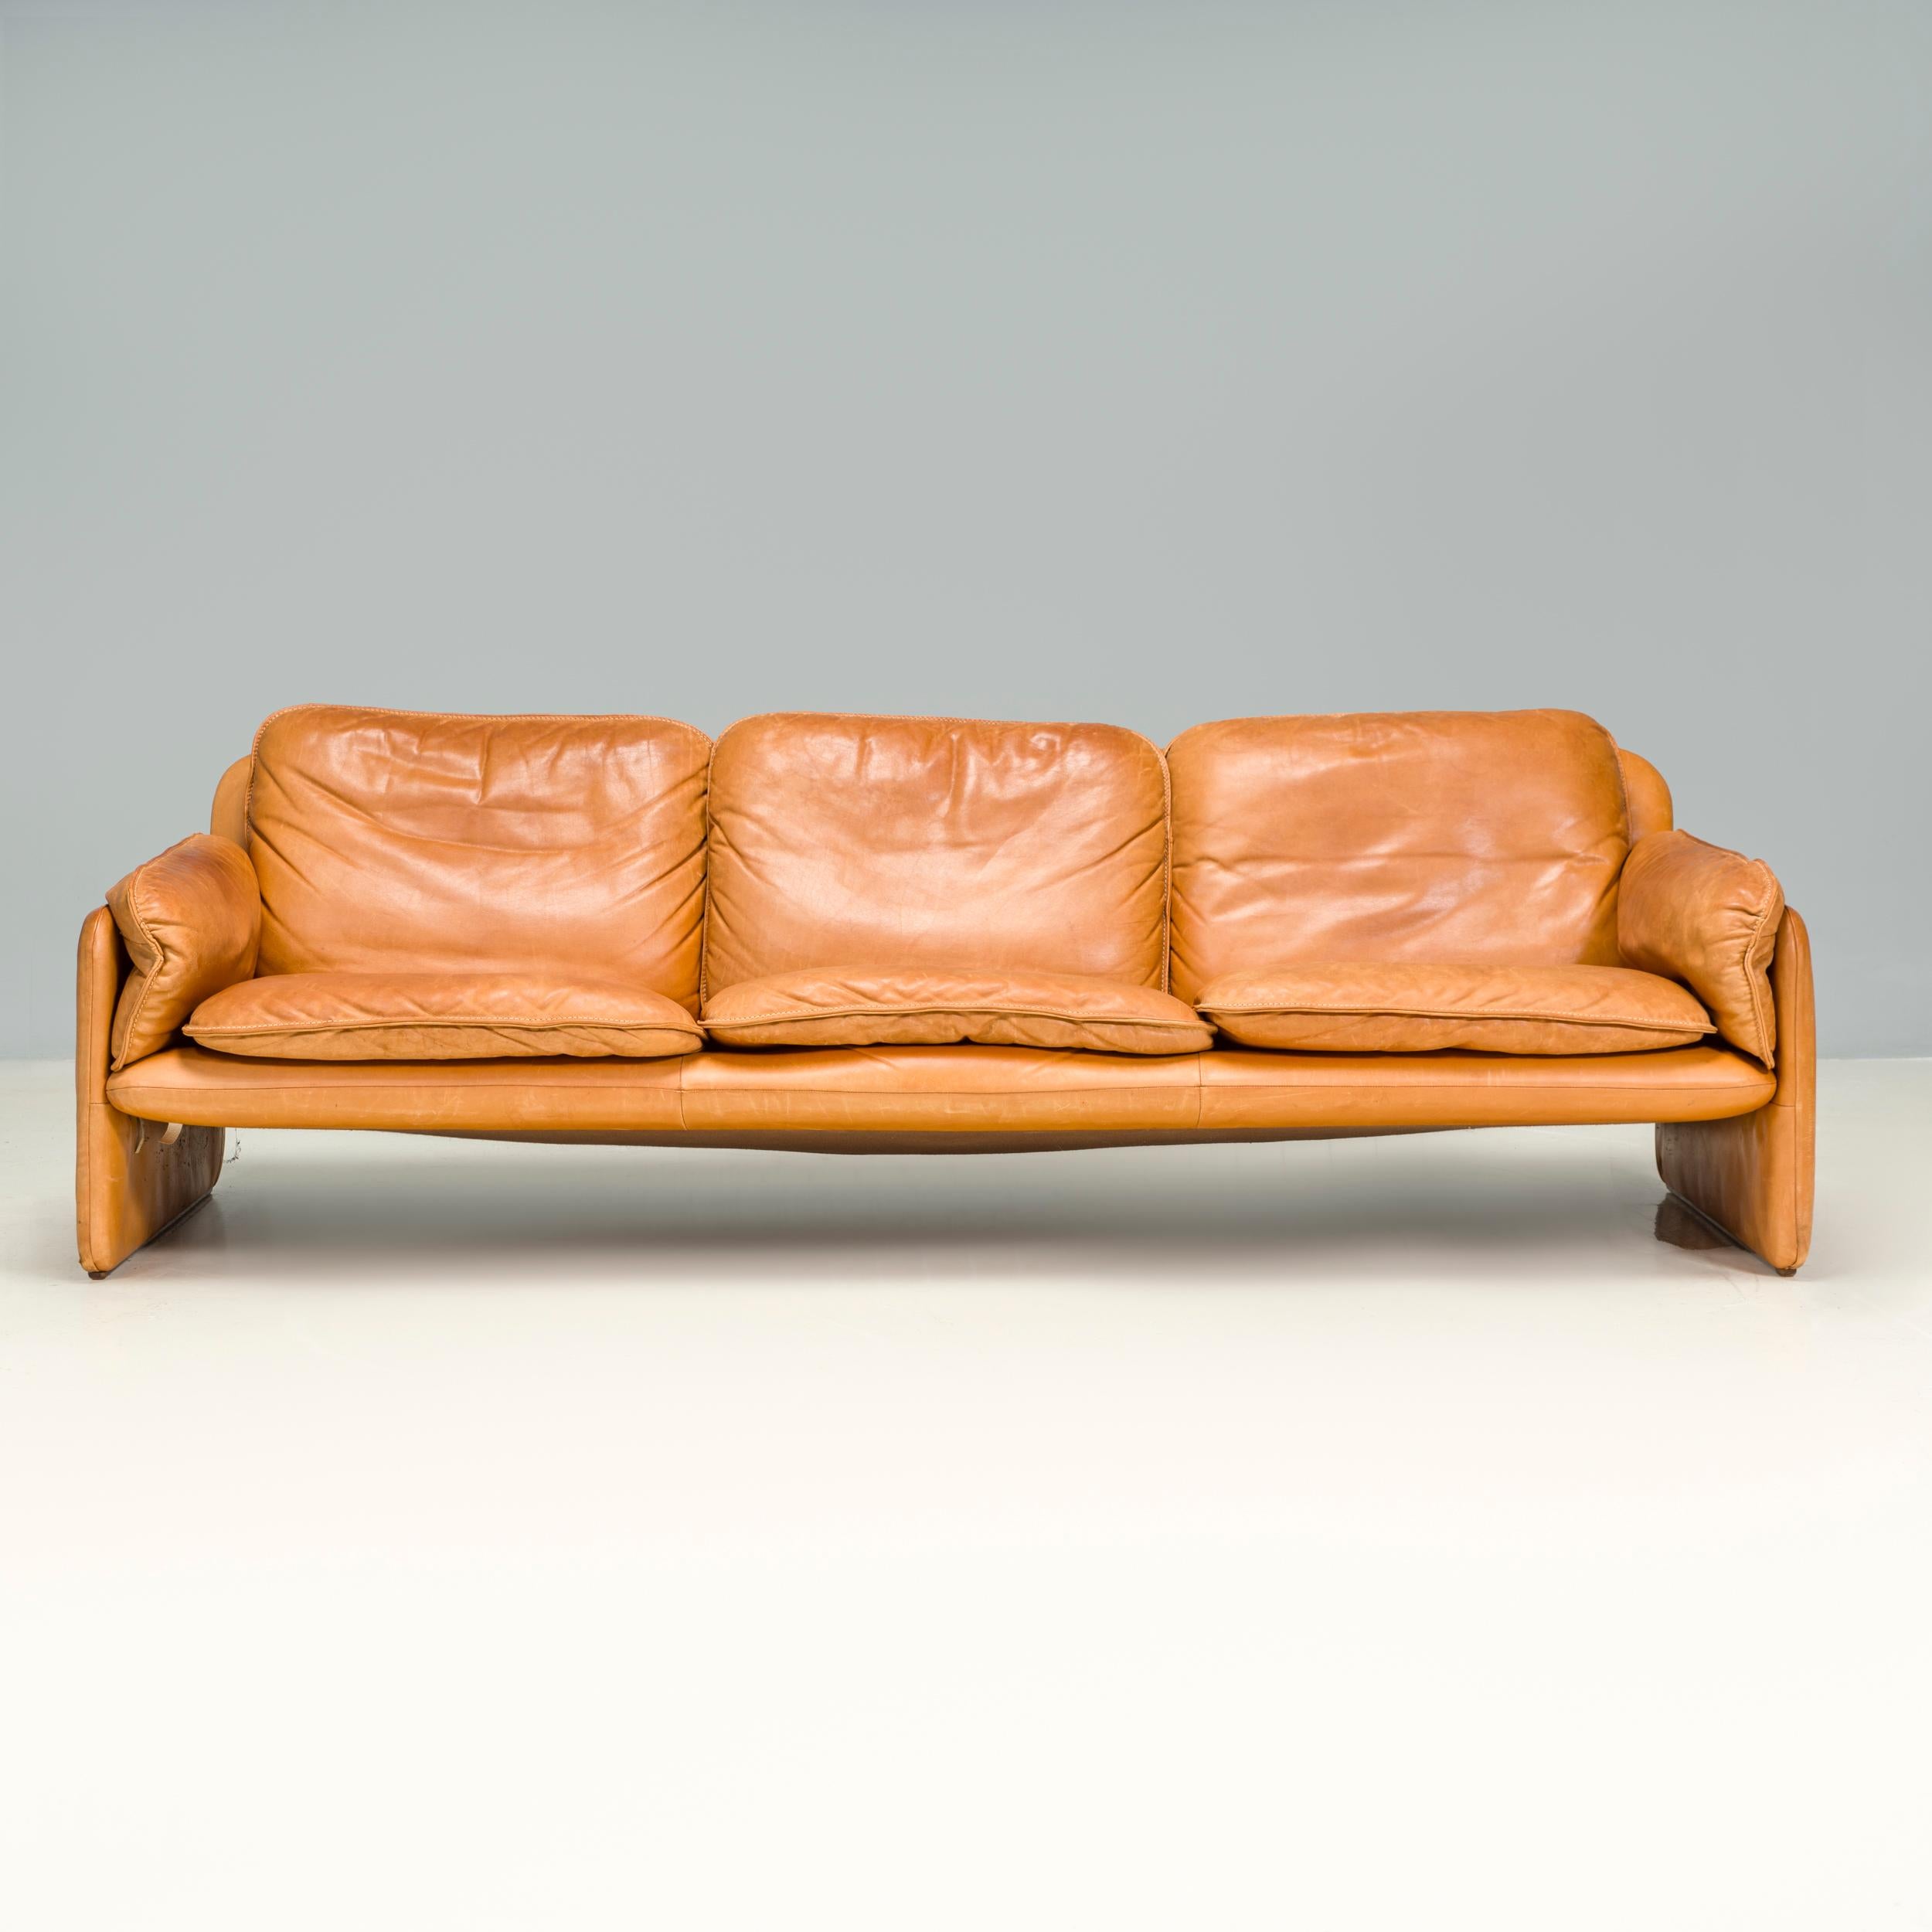 Design emblématique du milieu du siècle, le De Sede DS-61 n'est plus produit, ce qui en fait une pièce de collection du fabricant de meubles.

Entièrement revêtu de cuir souple couleur cèdre, ce canapé trois places présente une structure élancée aux